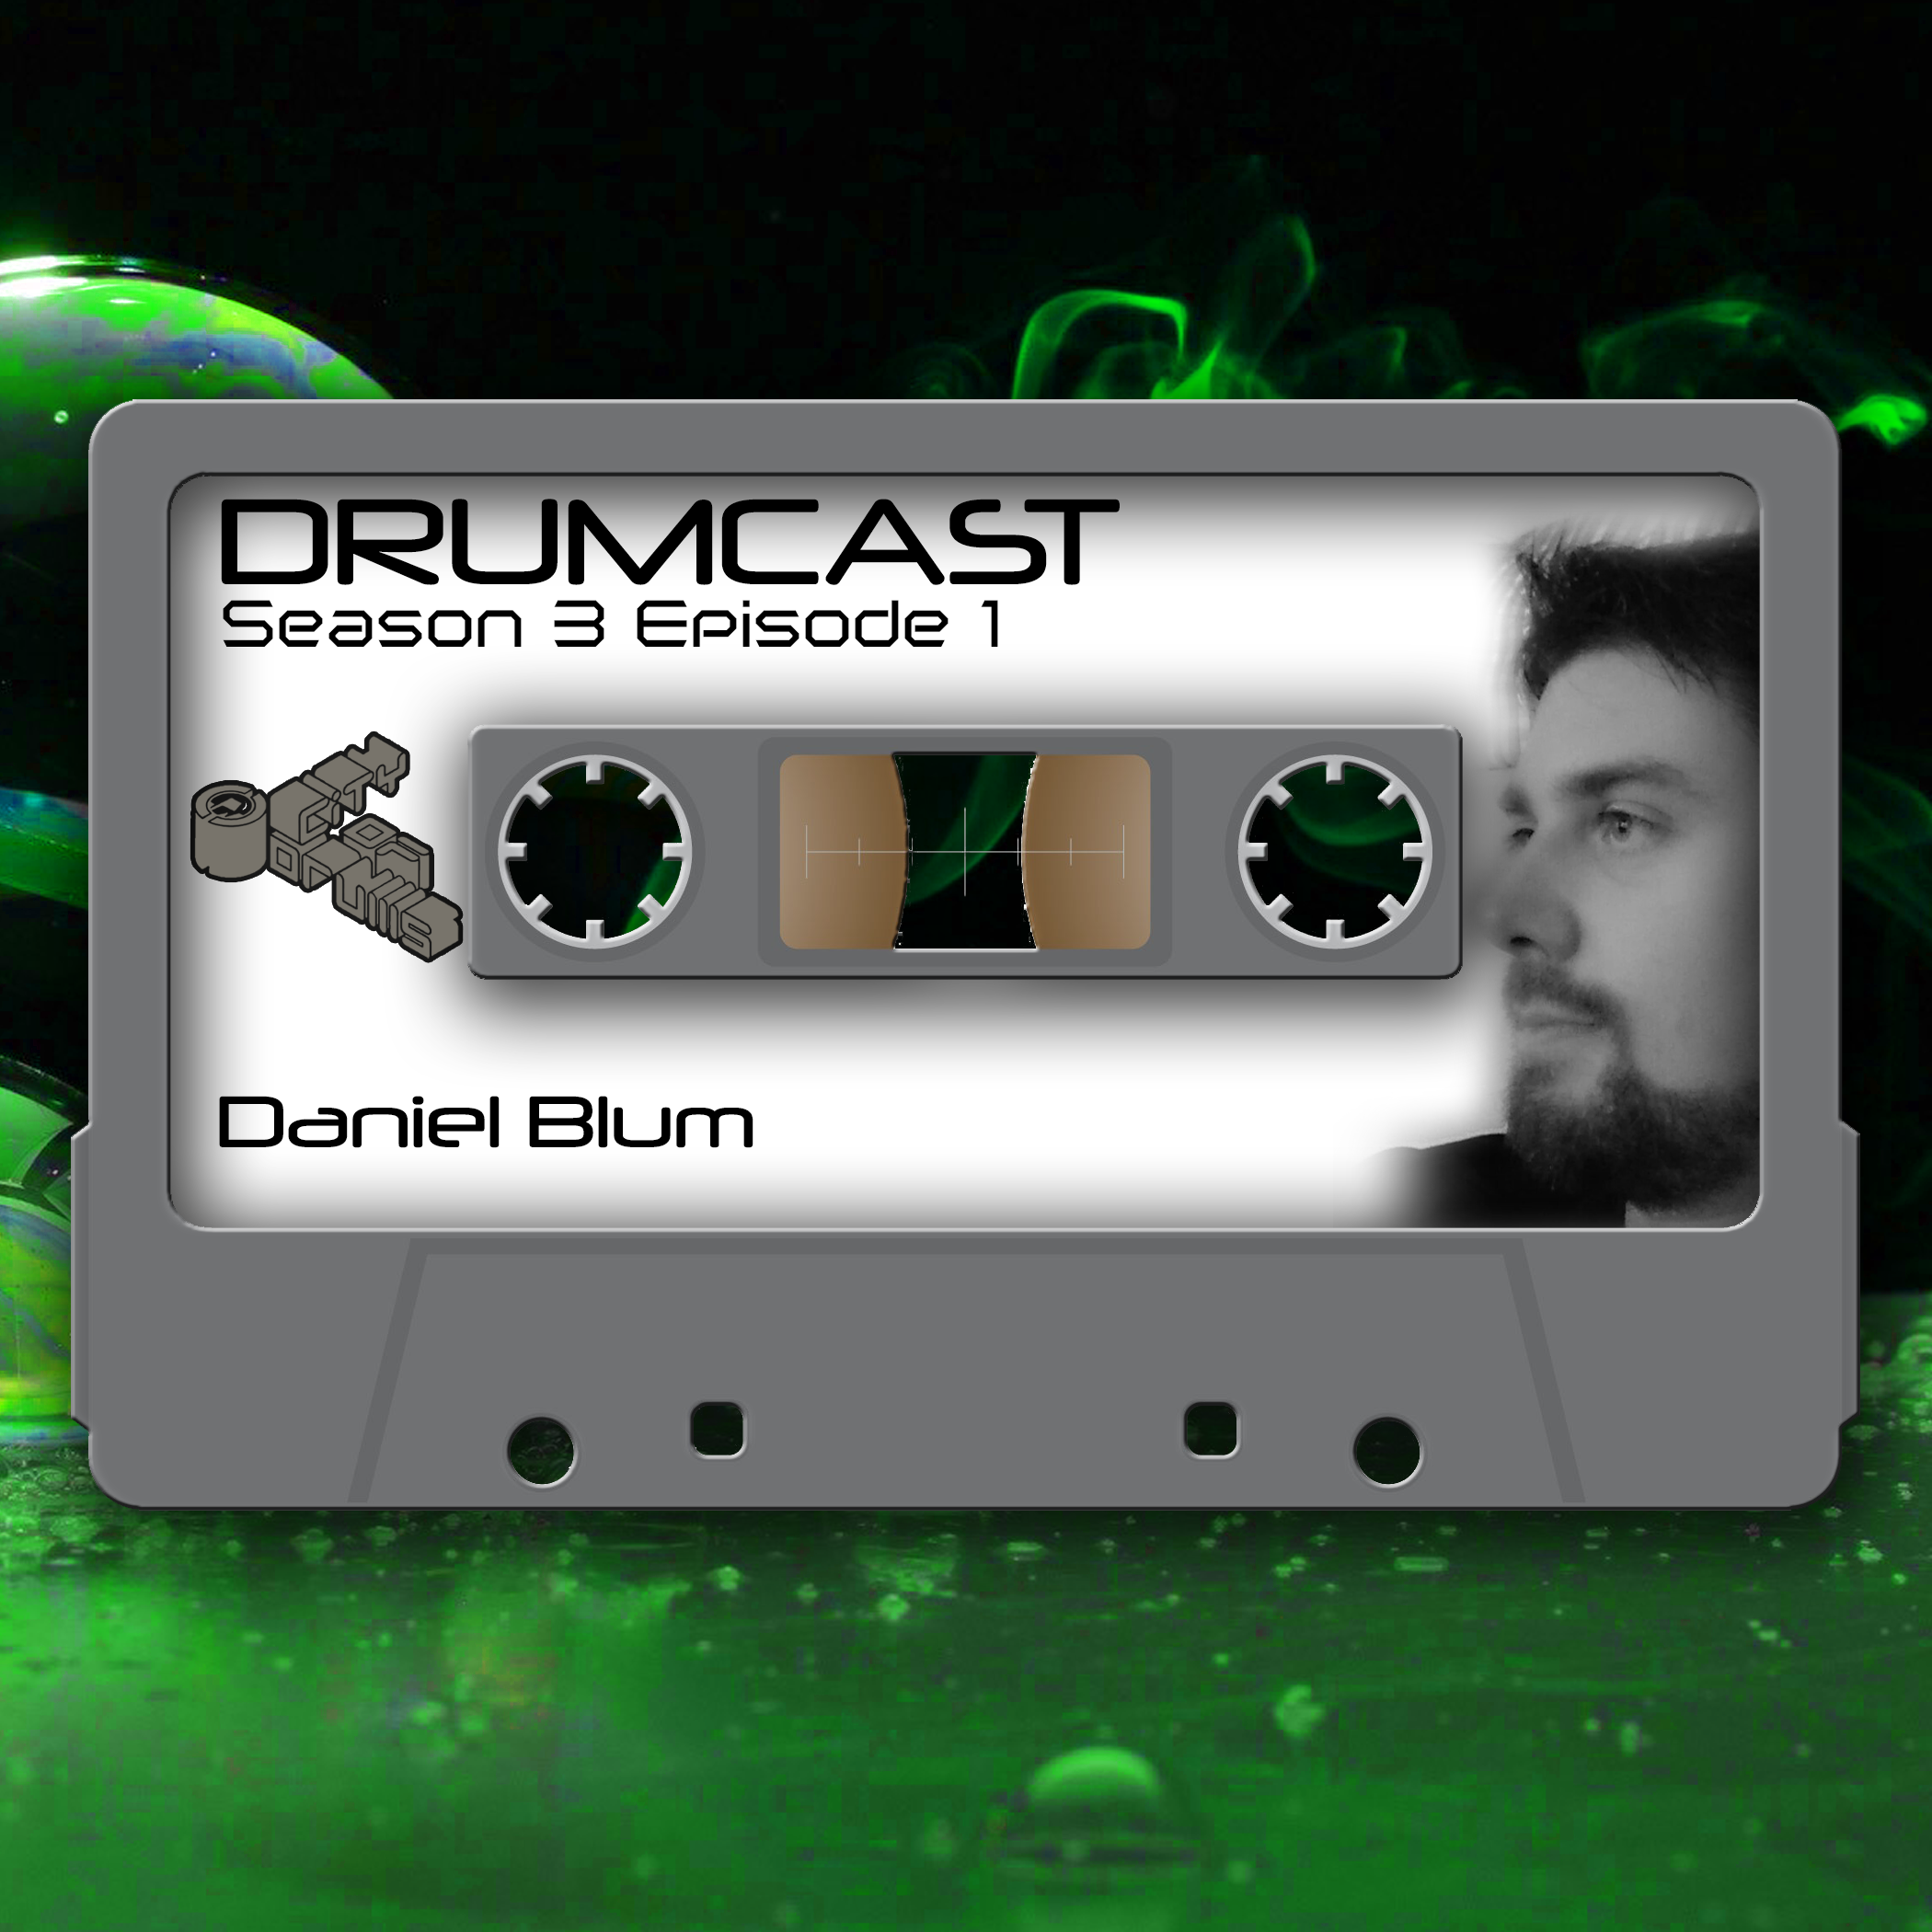 DRUMCAST Season 3 Episode 1 mit Daniel Blum! 19